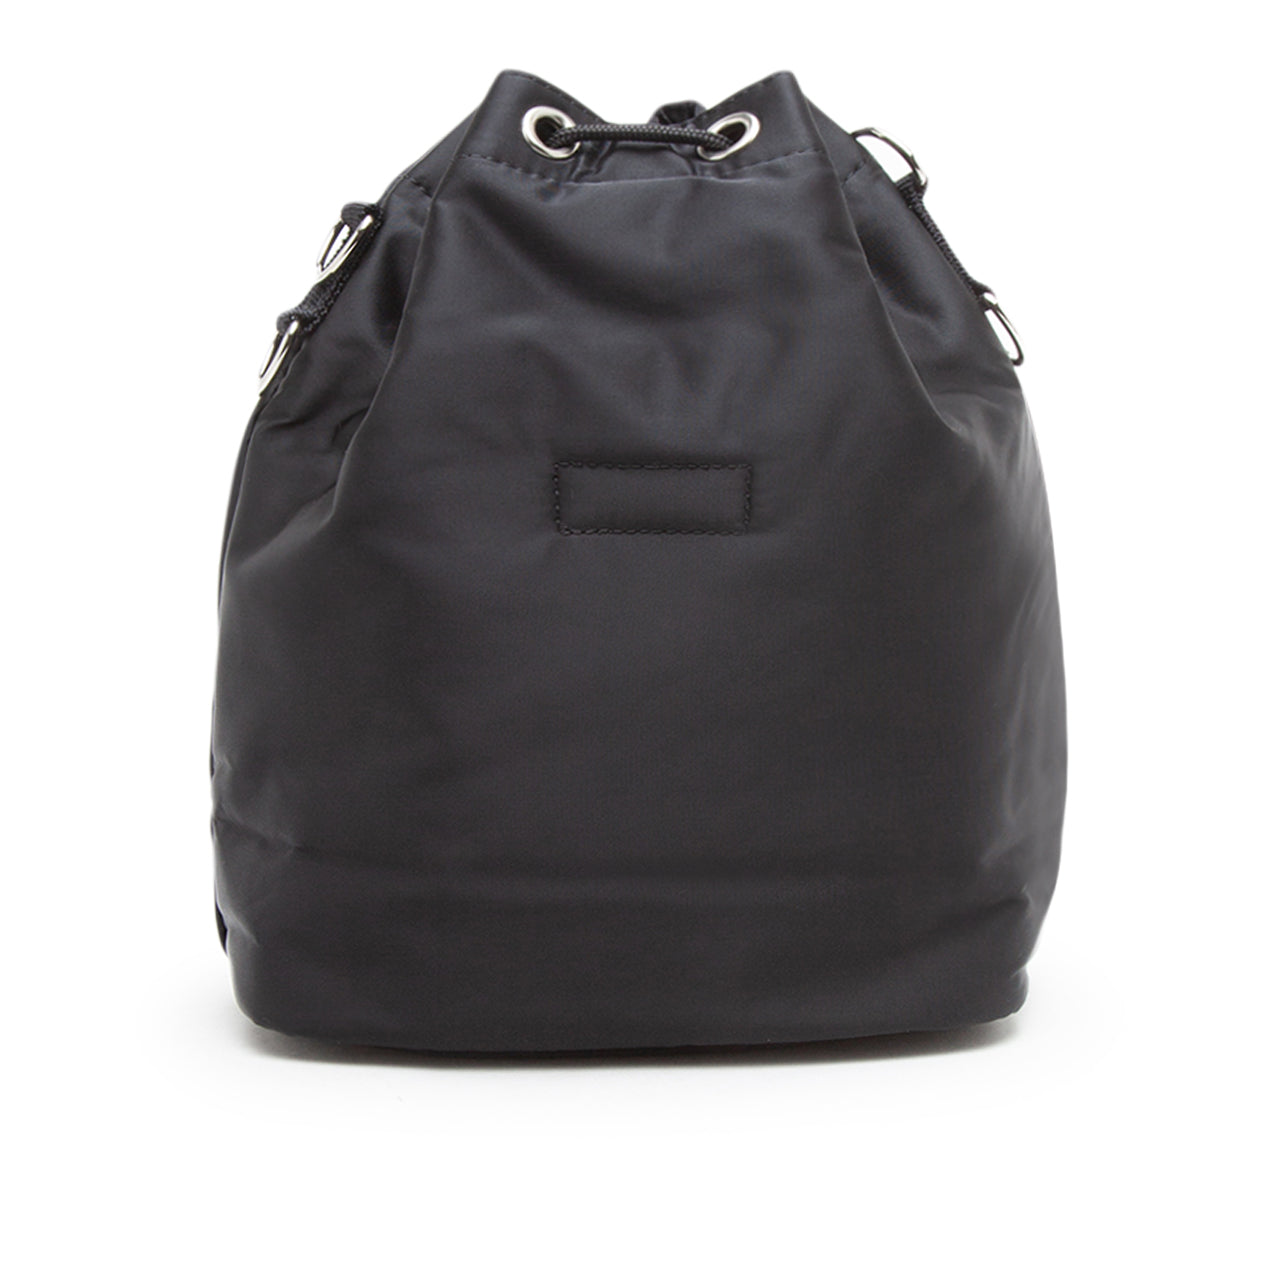 porter by yoshida small balloon sac bag (black)